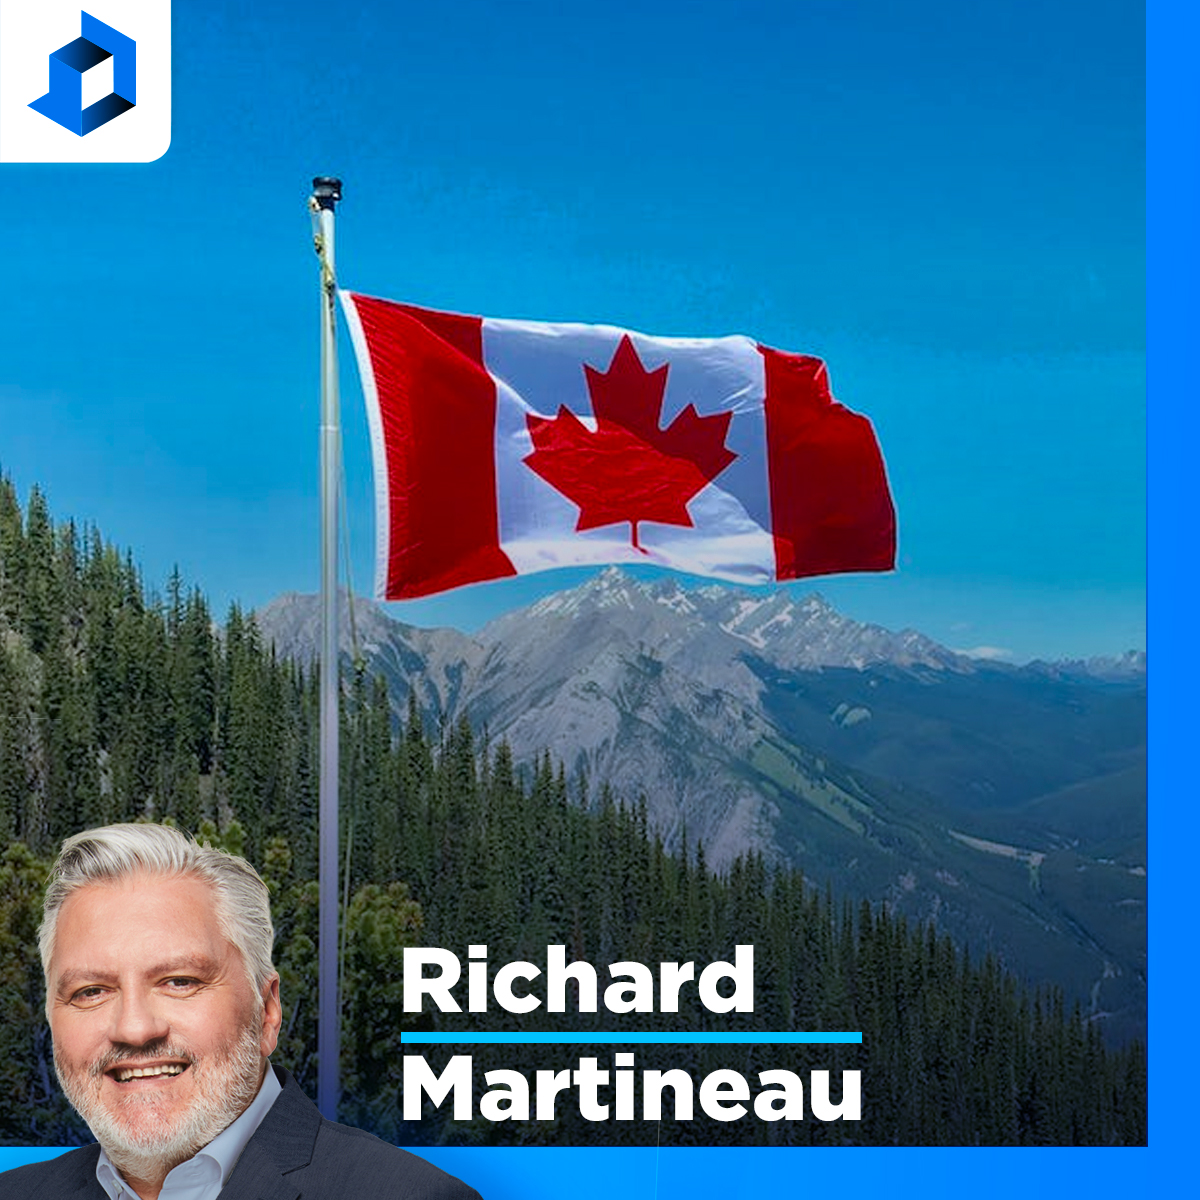 Le Canada se met à genoux devant la dictature de la Chine, constate Martineau